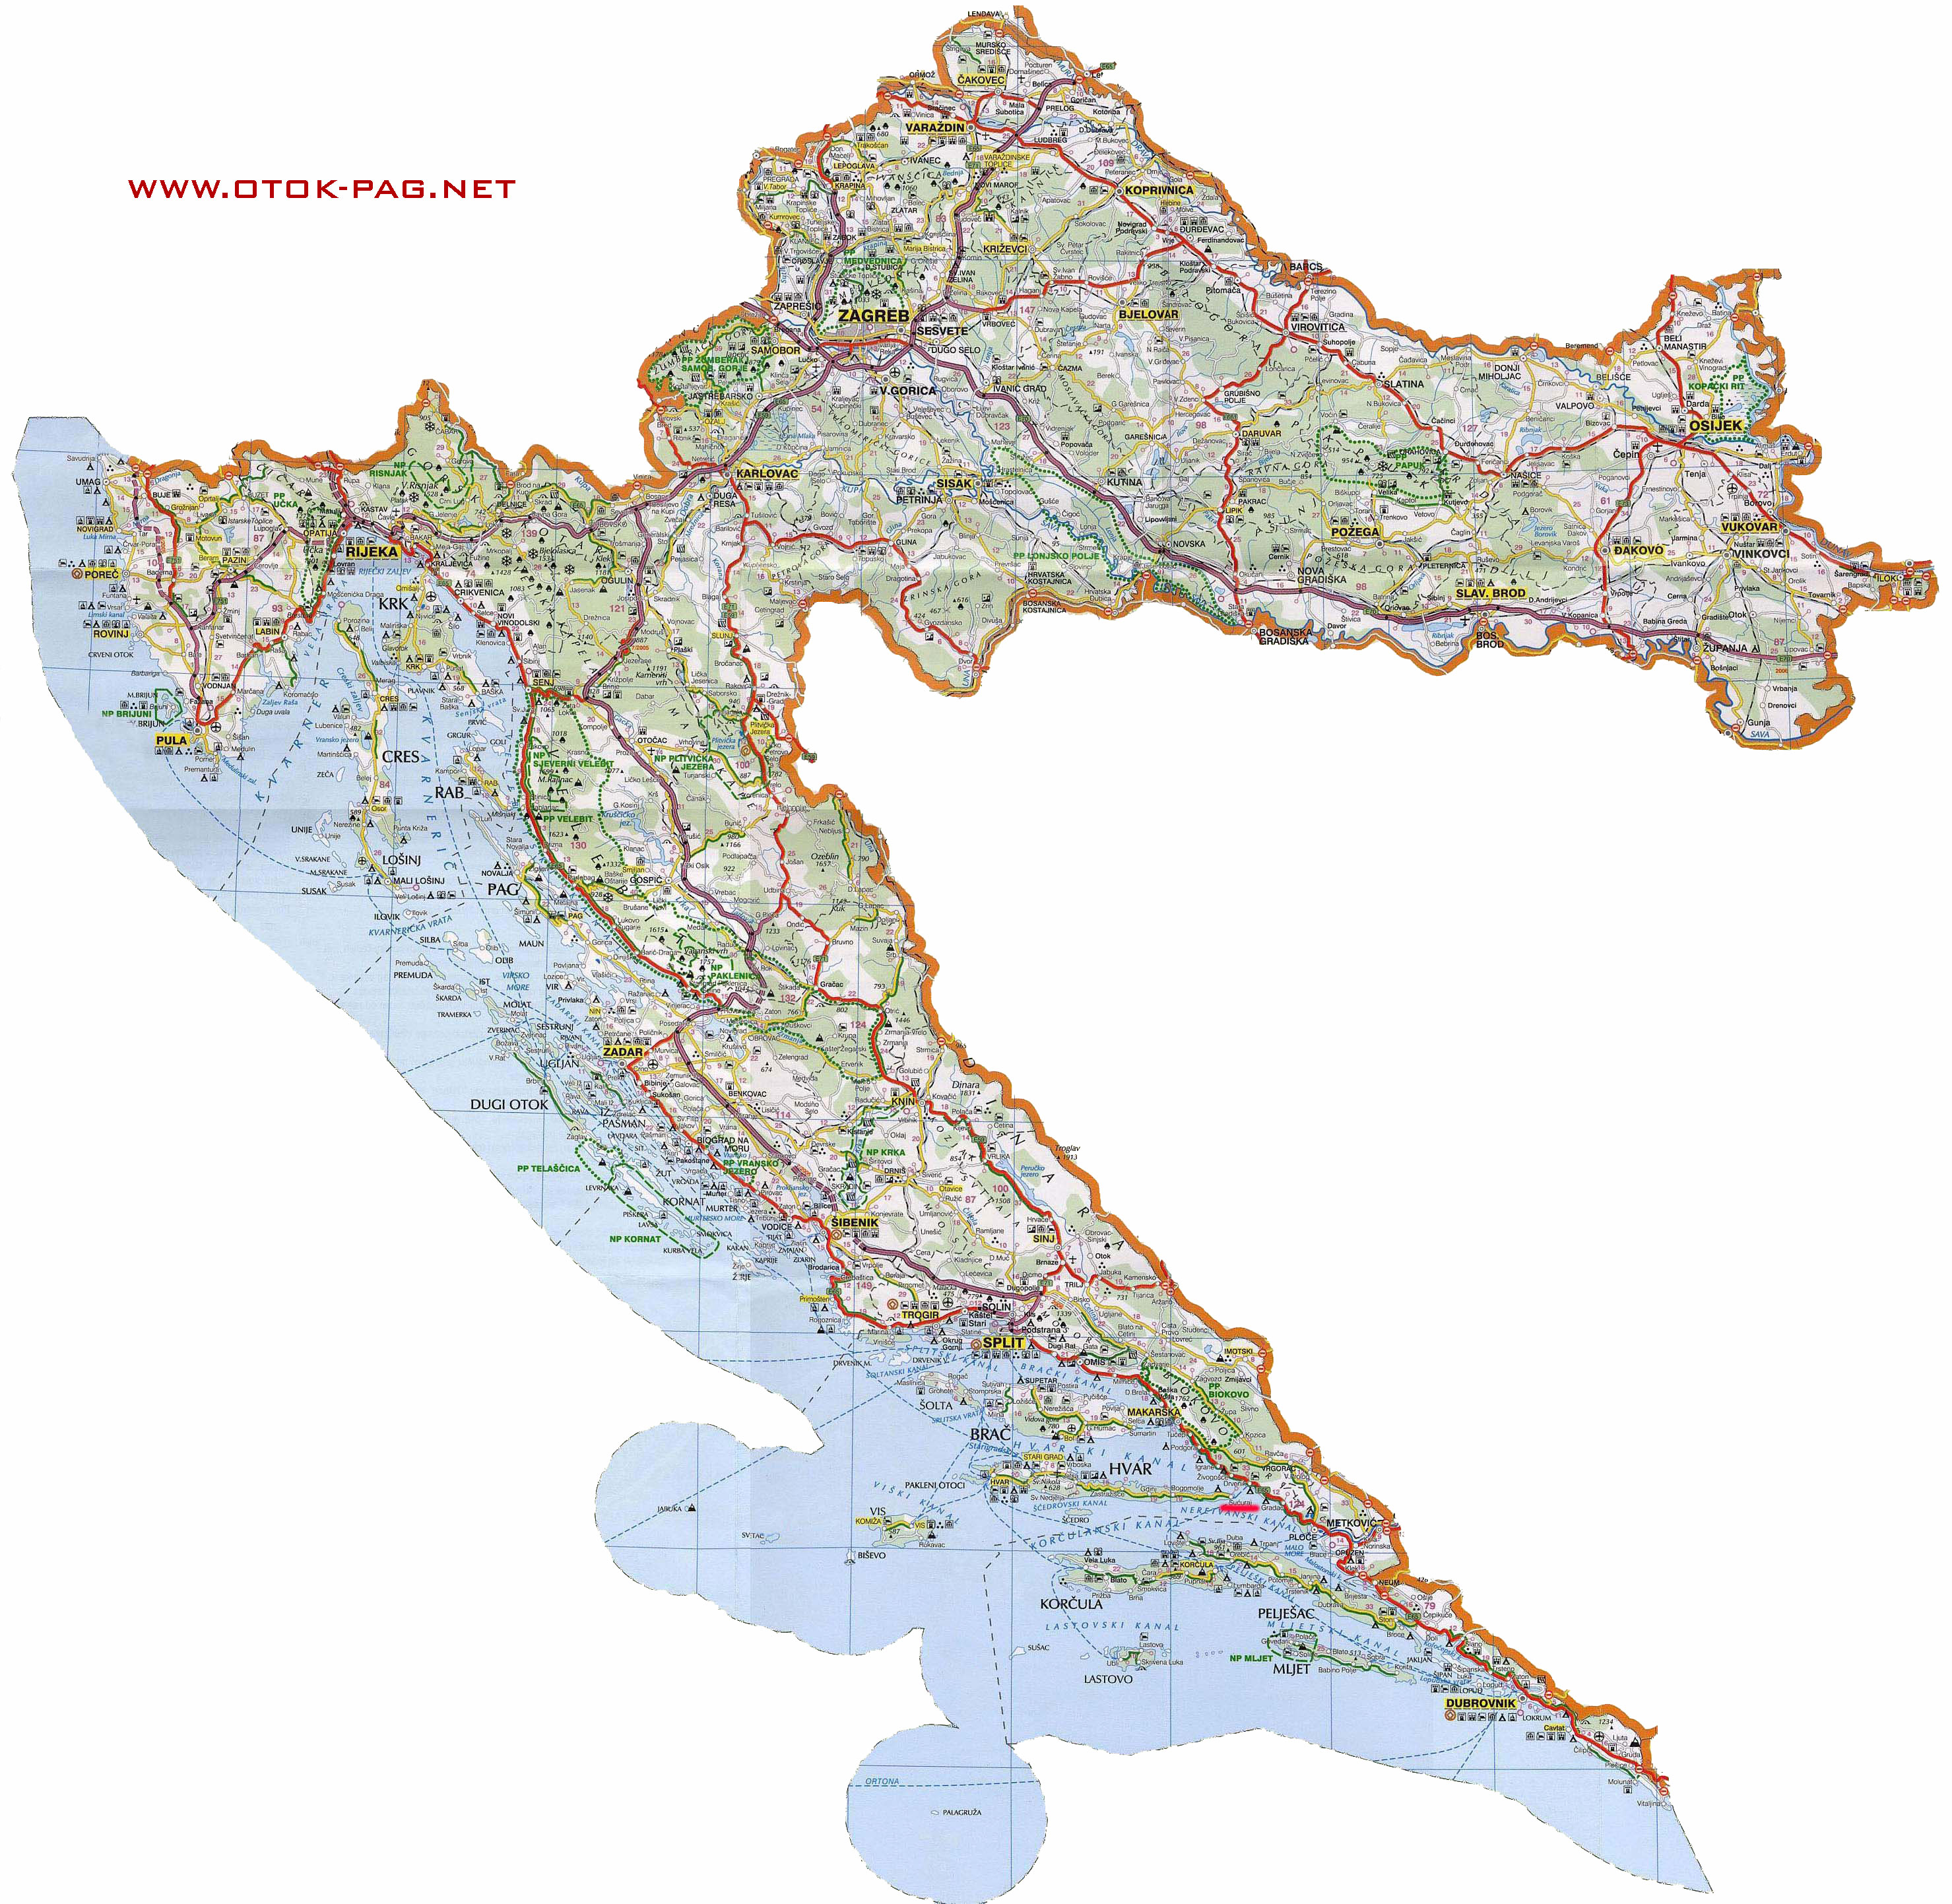 zemljopisna karta dalmacije Index of /autorute zemljopisna karta dalmacije